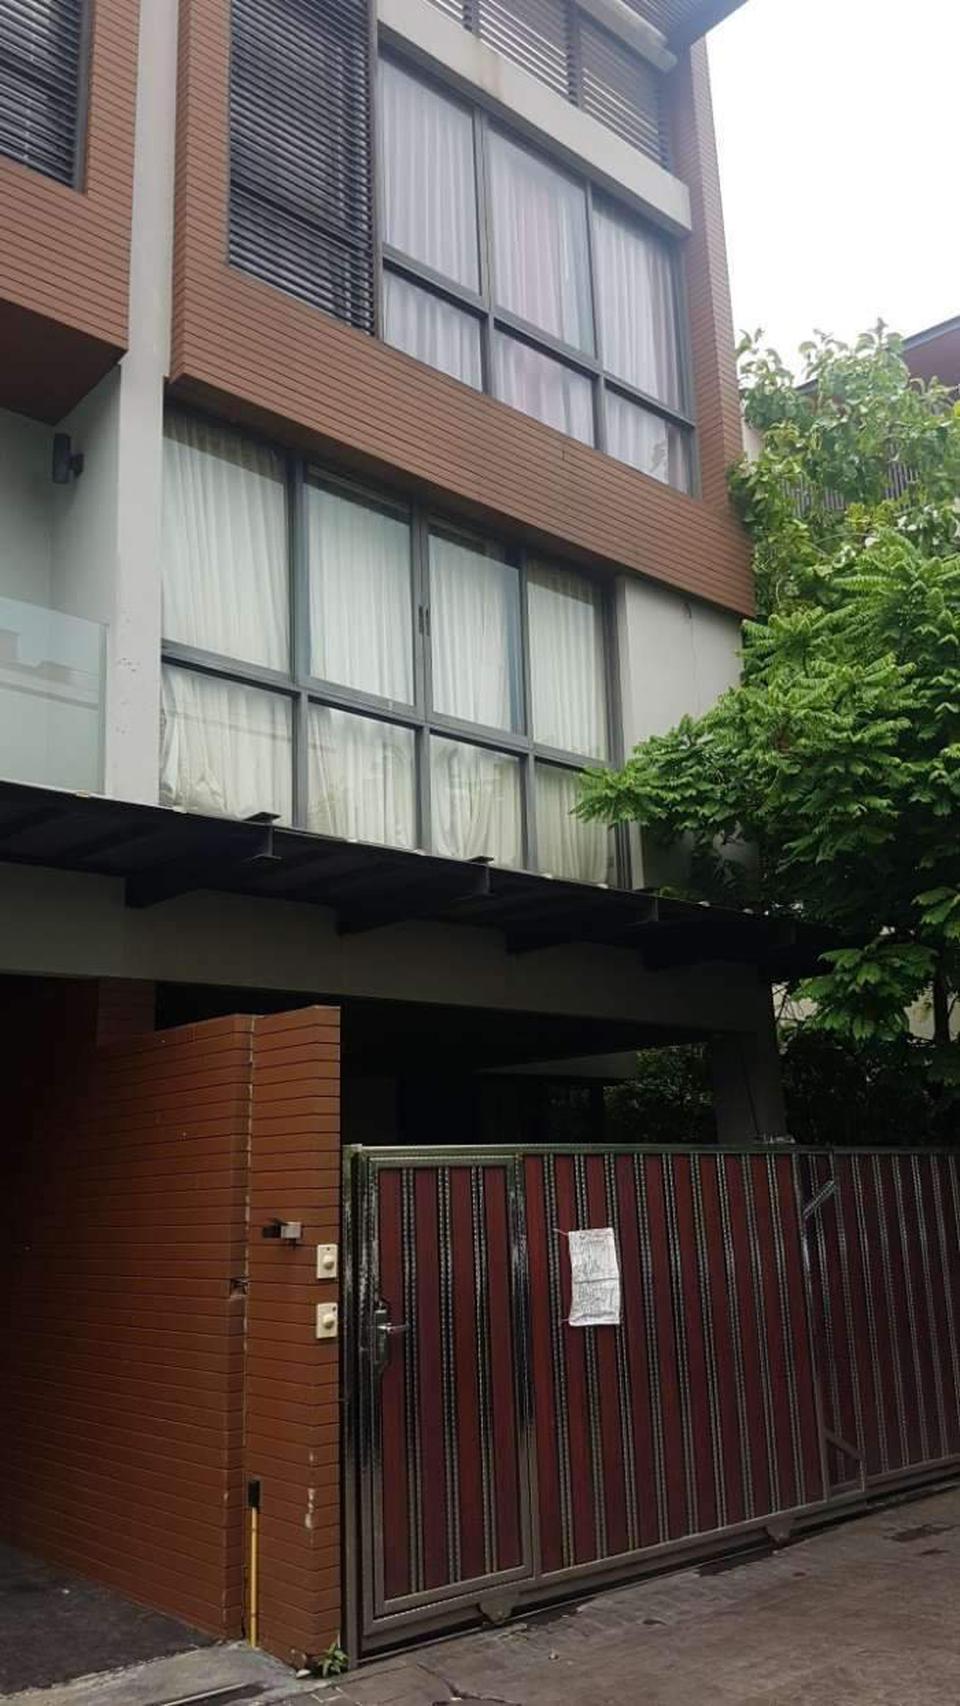 ขายบ้านแฝด 3 ชั้น The Plot Yen-Akat  ซอยเย็นอากาศ 2 ใกล้ MRT สวนลุมฯ , สีลม , สาทร รูปเล็กที่ 1